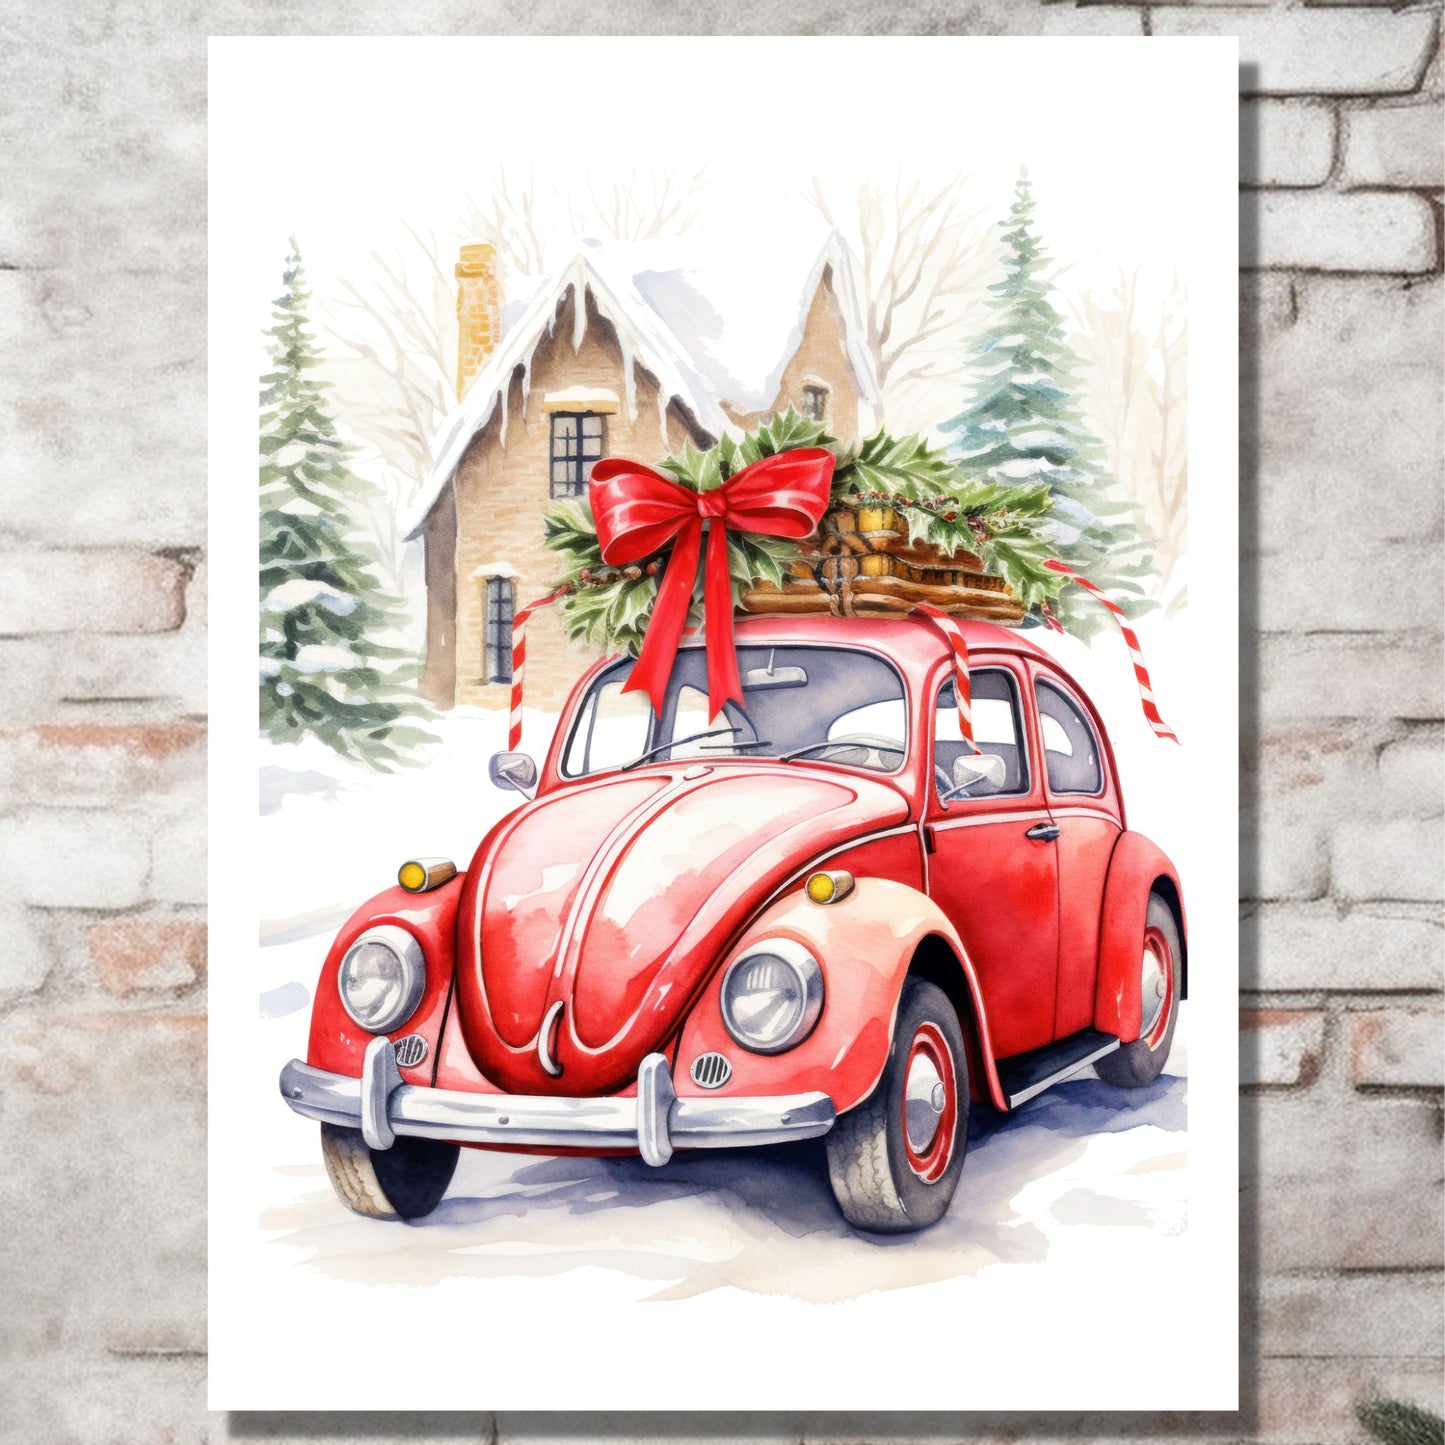 Plakat og lerret med grafisk julemotiv av gammel, rød volkswagen boble. Bilen står foran et hus, og på taket er den lastet med juledekorasjoner. På bildet henger motivet på lerret på en murvegg.